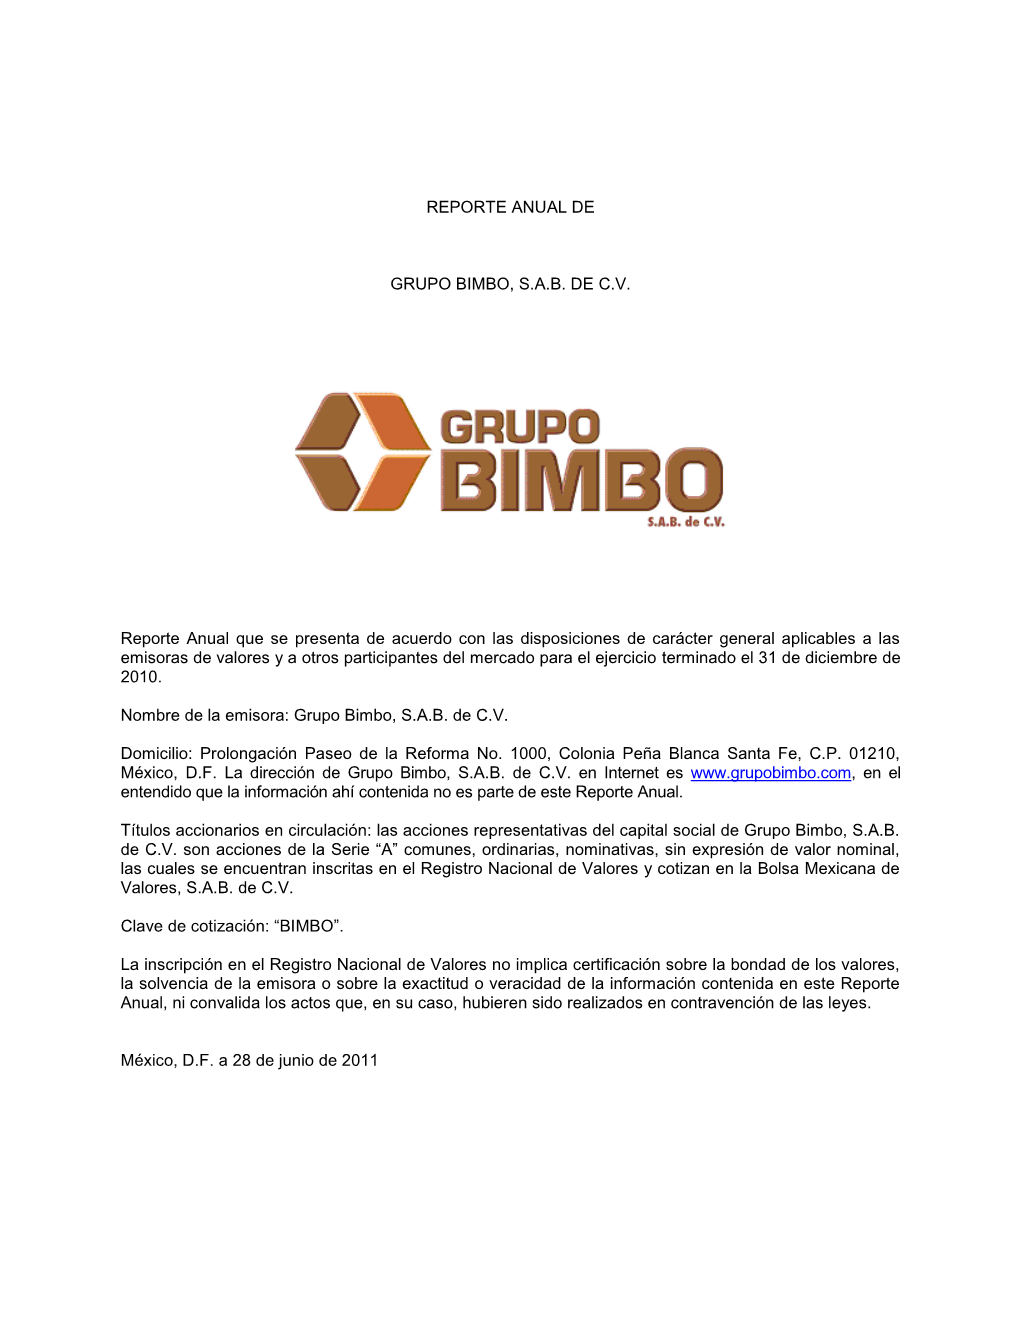 REPORTE ANUAL DE GRUPO BIMBO, S.A.B. DE C.V. Reporte